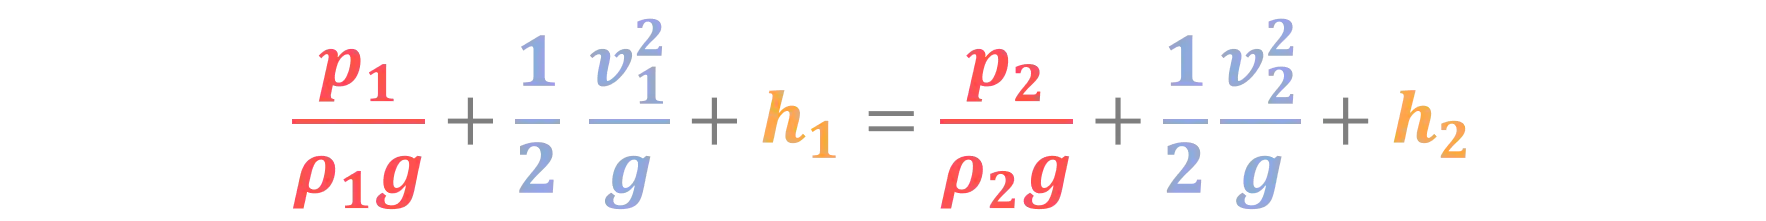 Equação de Bernoulli: Unidade de comprimento